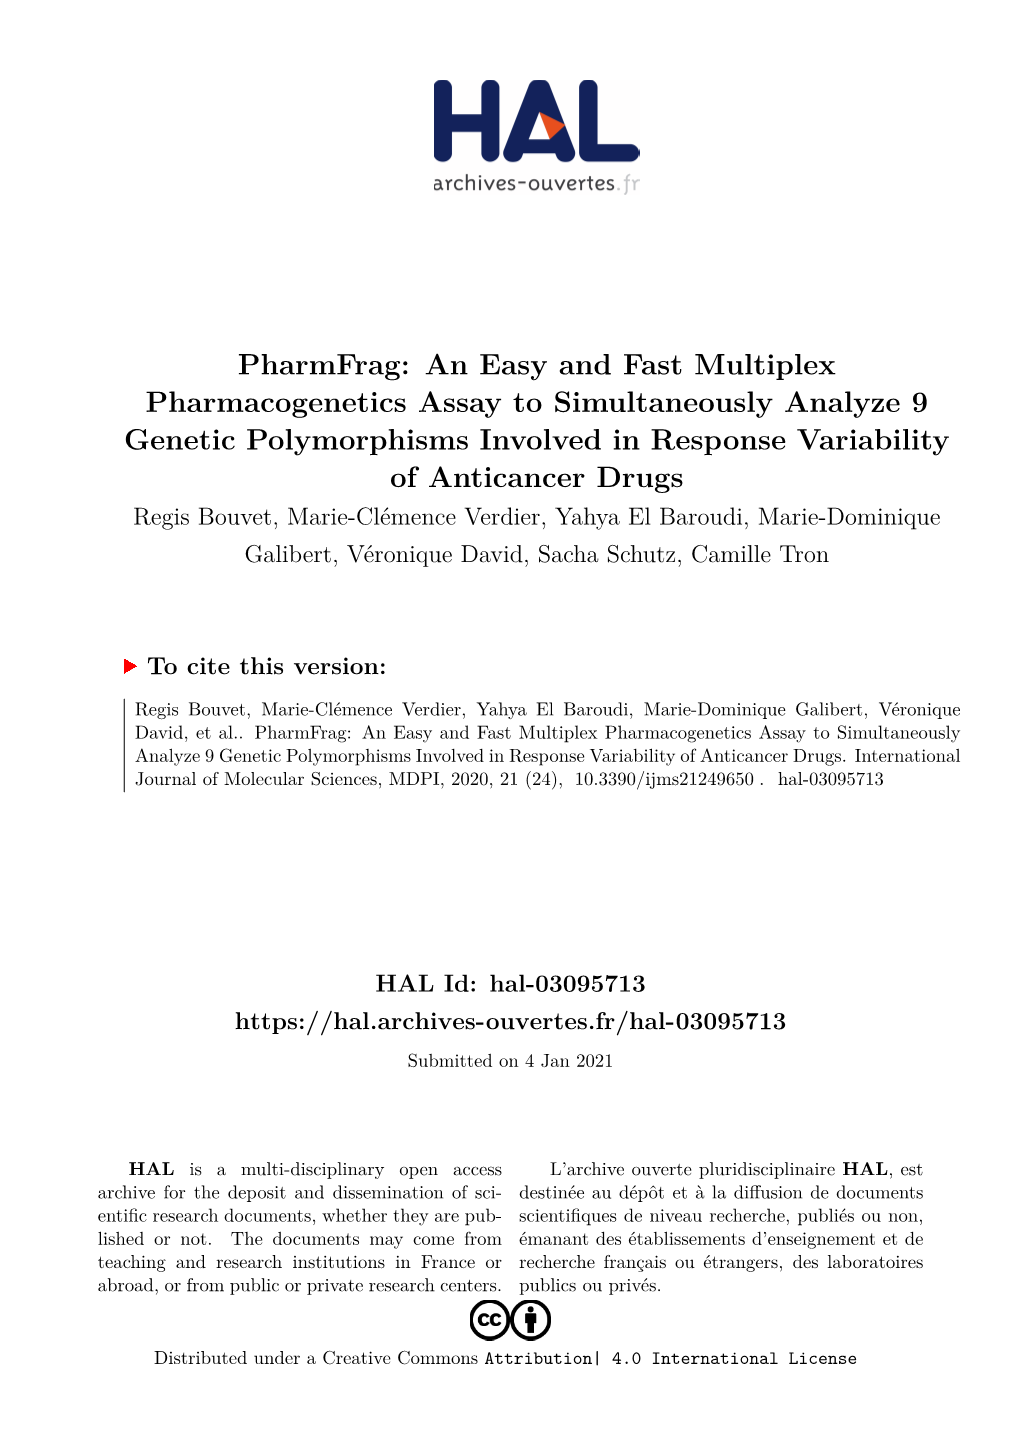 Pharmfrag: an Easy and Fast Multiplex Pharmacogenetics Assay